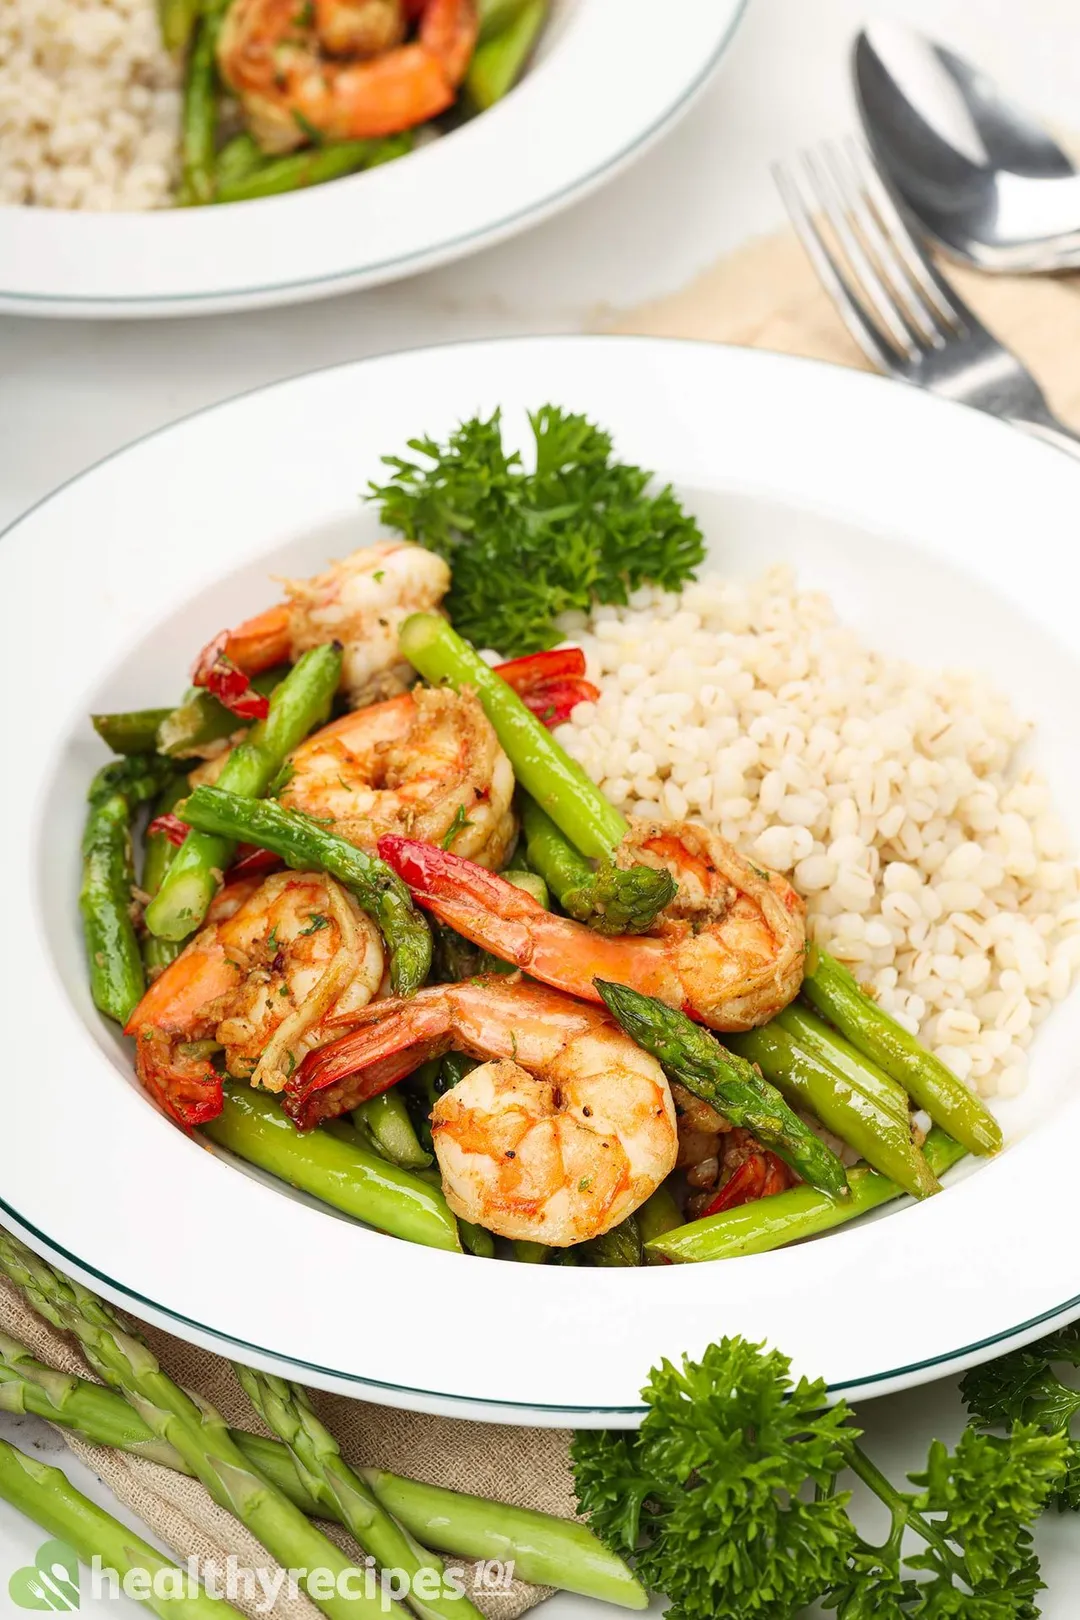 How to Prepare Asparagus for shrimp and asparagus